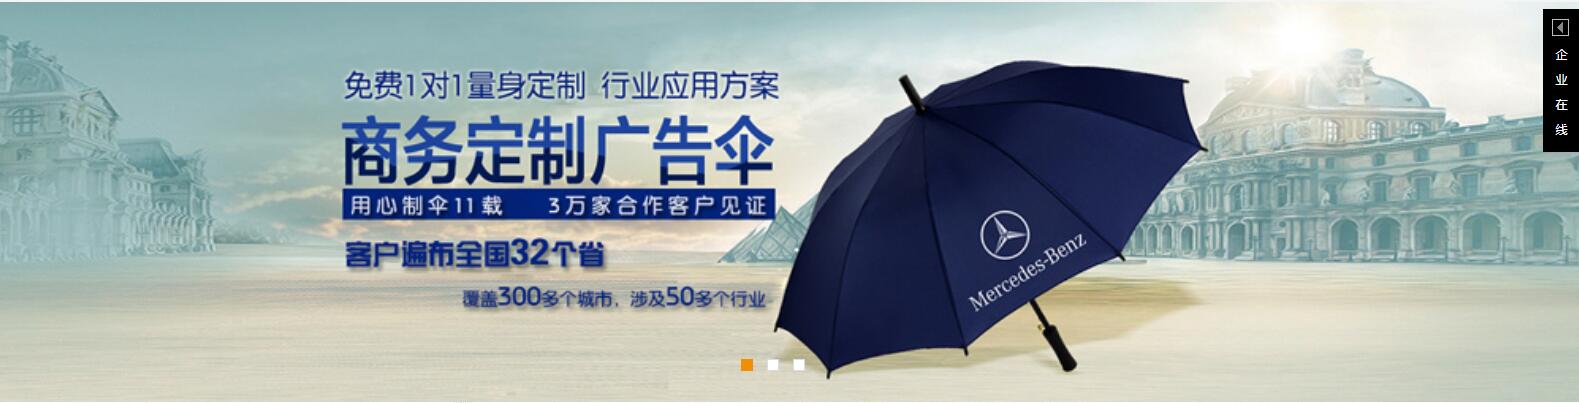 珠海雨伞批发、珠海雨伞批发价格、珠海雨伞批发厂